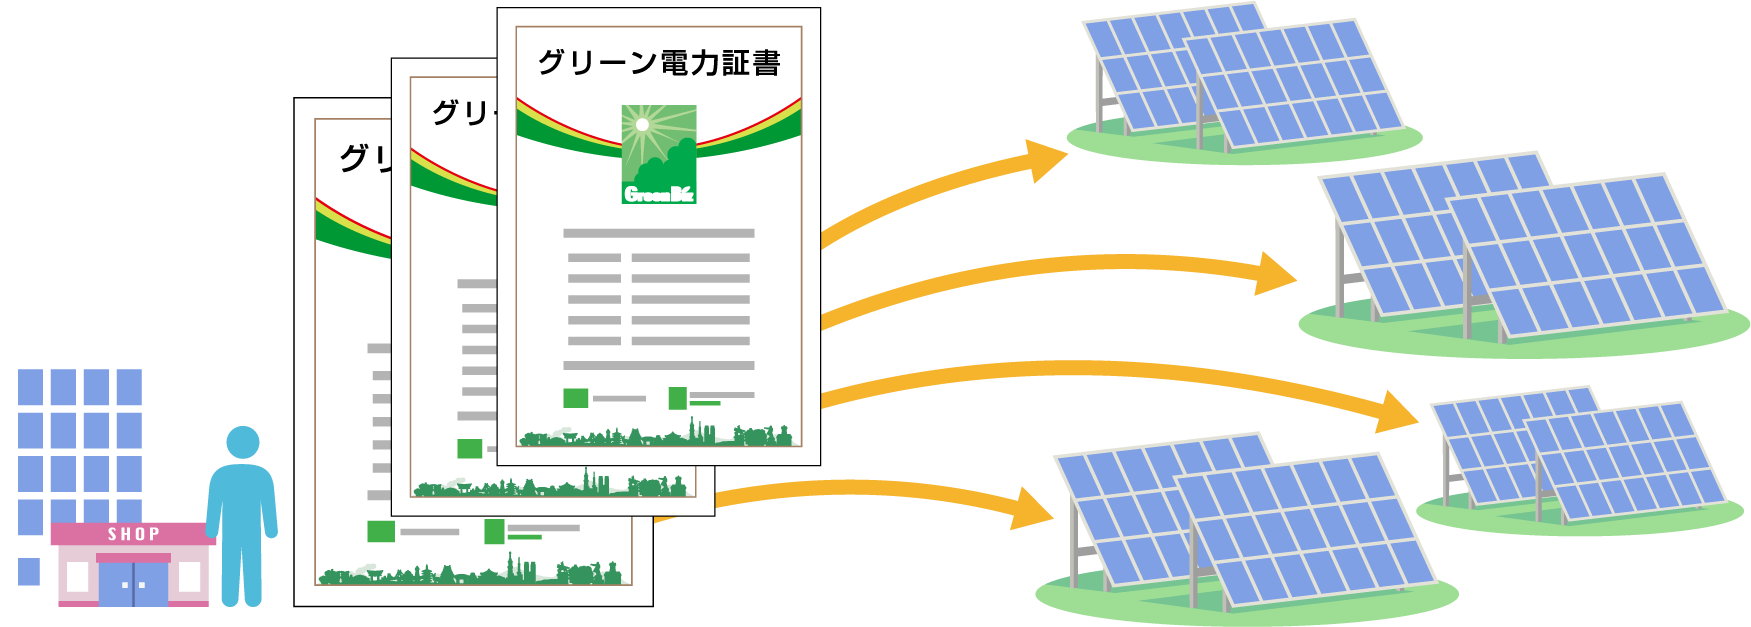 グリーン電力証書とはCO2排出削減に貢献した証